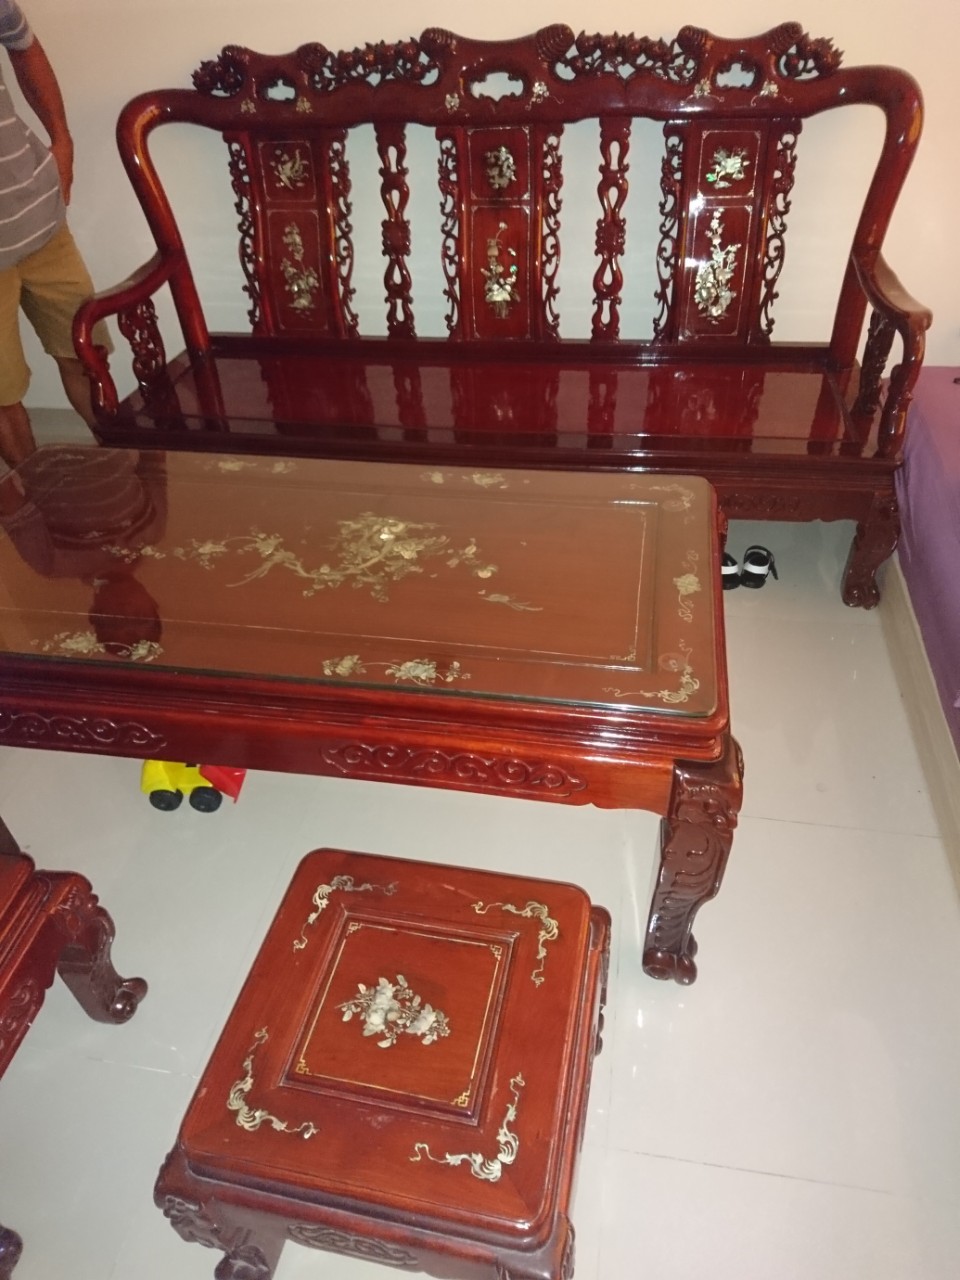 Bộ bàn ghế phòng khách gỗ gõ đỏ Việt Nam là một sản phẩm độc đáo và có giá trị thẩm mỹ cao. Từ chất liệu đến thiết kế, tất cả đều thể hiện được sự tư duy và kỹ năng của người thợ. Hãy cùng chiêm ngưỡng bộ bàn ghế phòng khách gỗ gõ đỏ Việt Nam để tưởng niệm vẻ đẹp của nghệ thuật gỗ truyền thống Việt Nam!